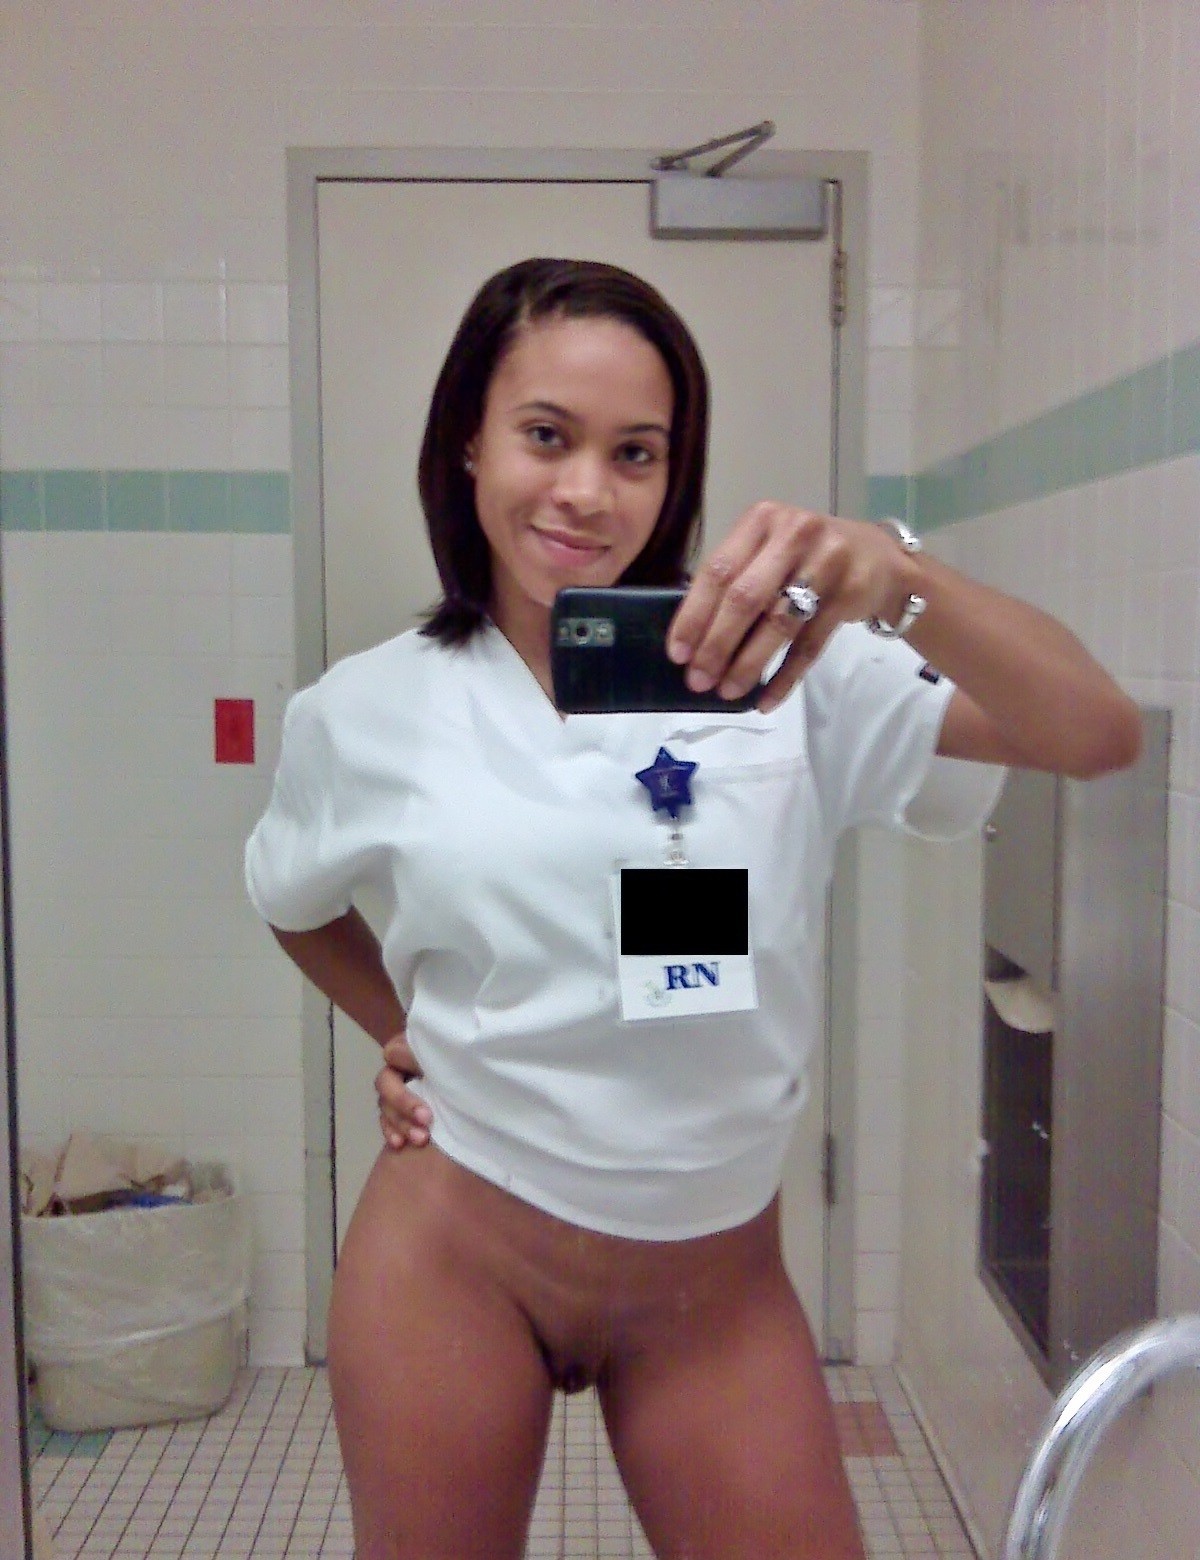 nakedgirlsatwork:  booomer75:  Hot nurses flashing.   Naked girls @ work 😜 